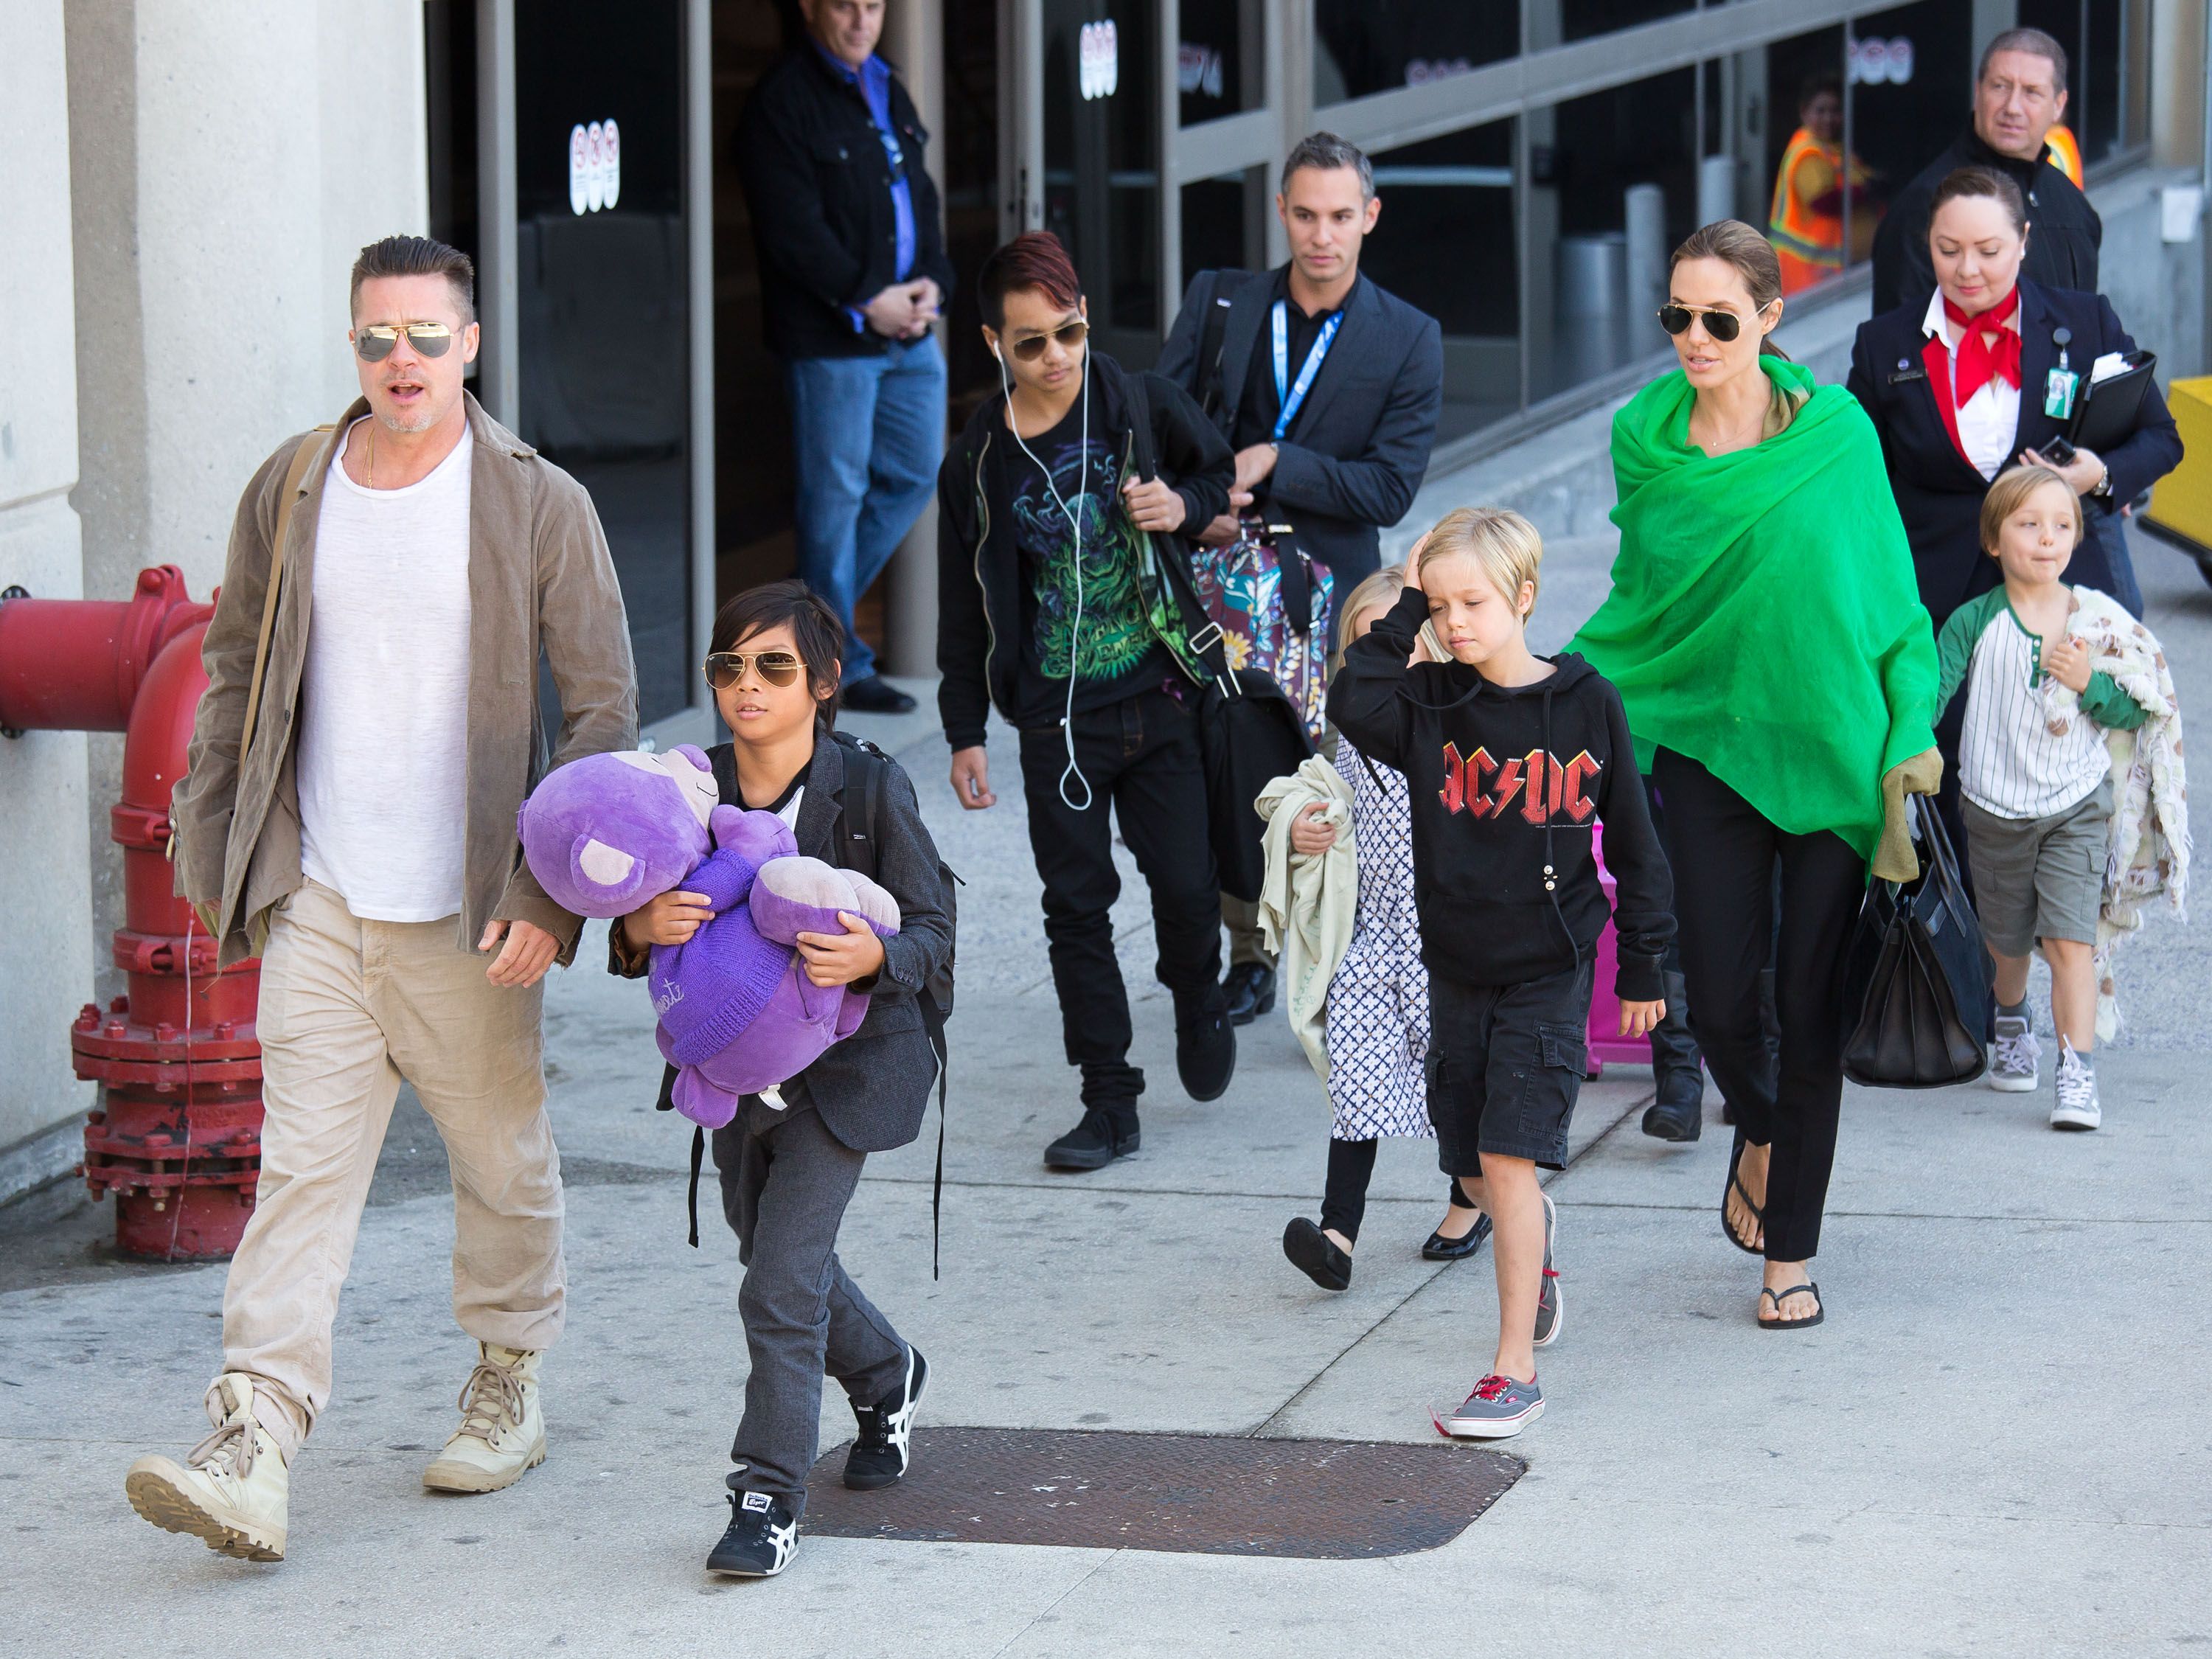 Brad Pitt et Angelina Jolie à l'aéroport international de Los Angeles avec leurs enfants, Pax Jolie-Pitt, Maddox Jolie-Pitt, Shiloh Jolie-Pitt, Vivienne Jolie-Pitt et Knox Jolie-Pitt le 5 février 2014. | Source : Getty Images